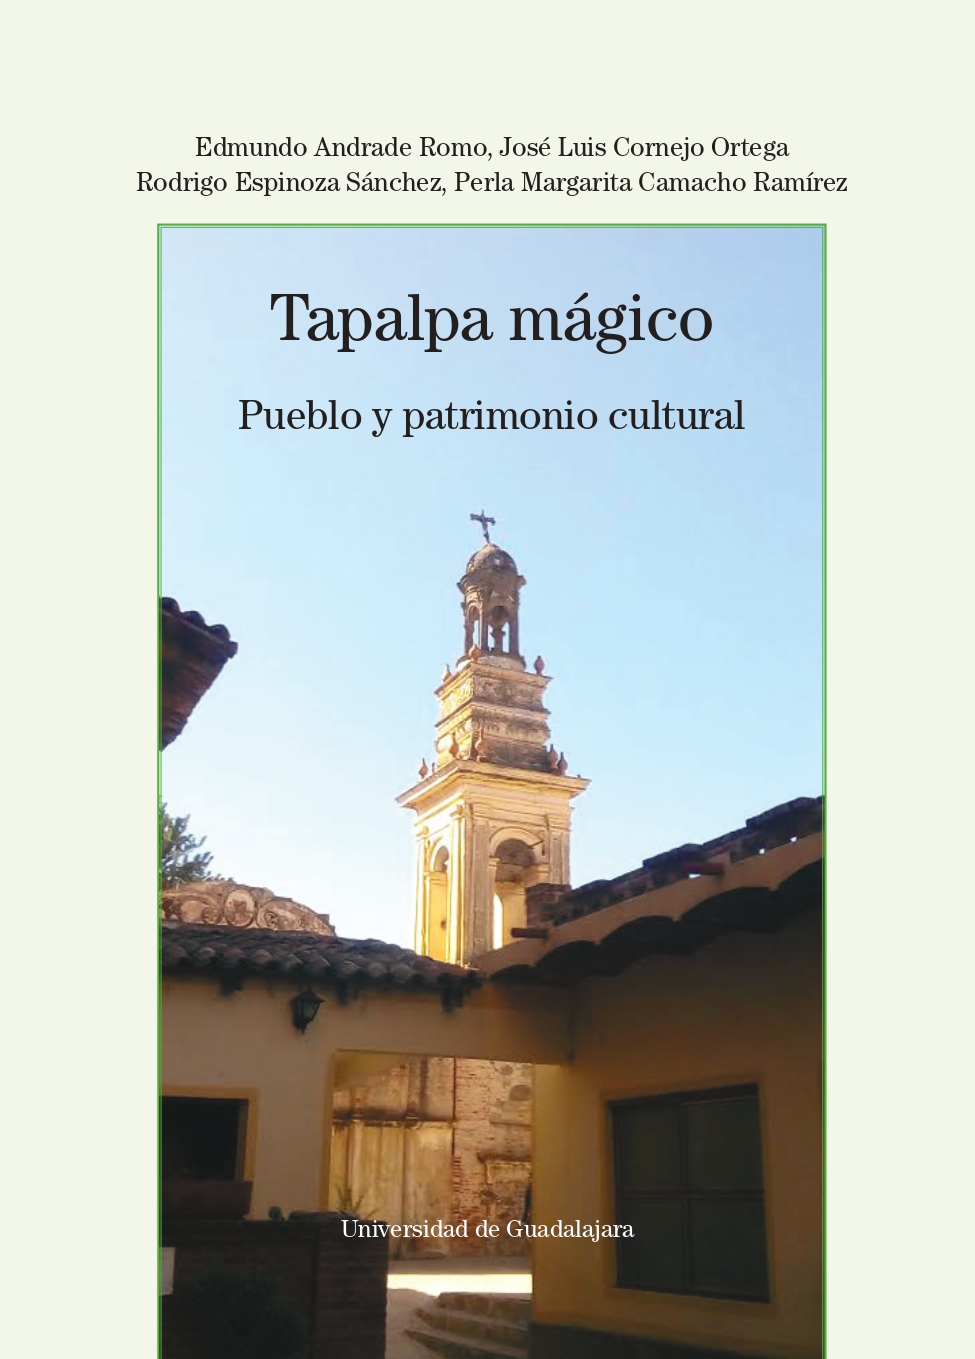 Tapalpa mágico. Pueblo y patrimonio cultural<br />
                                            